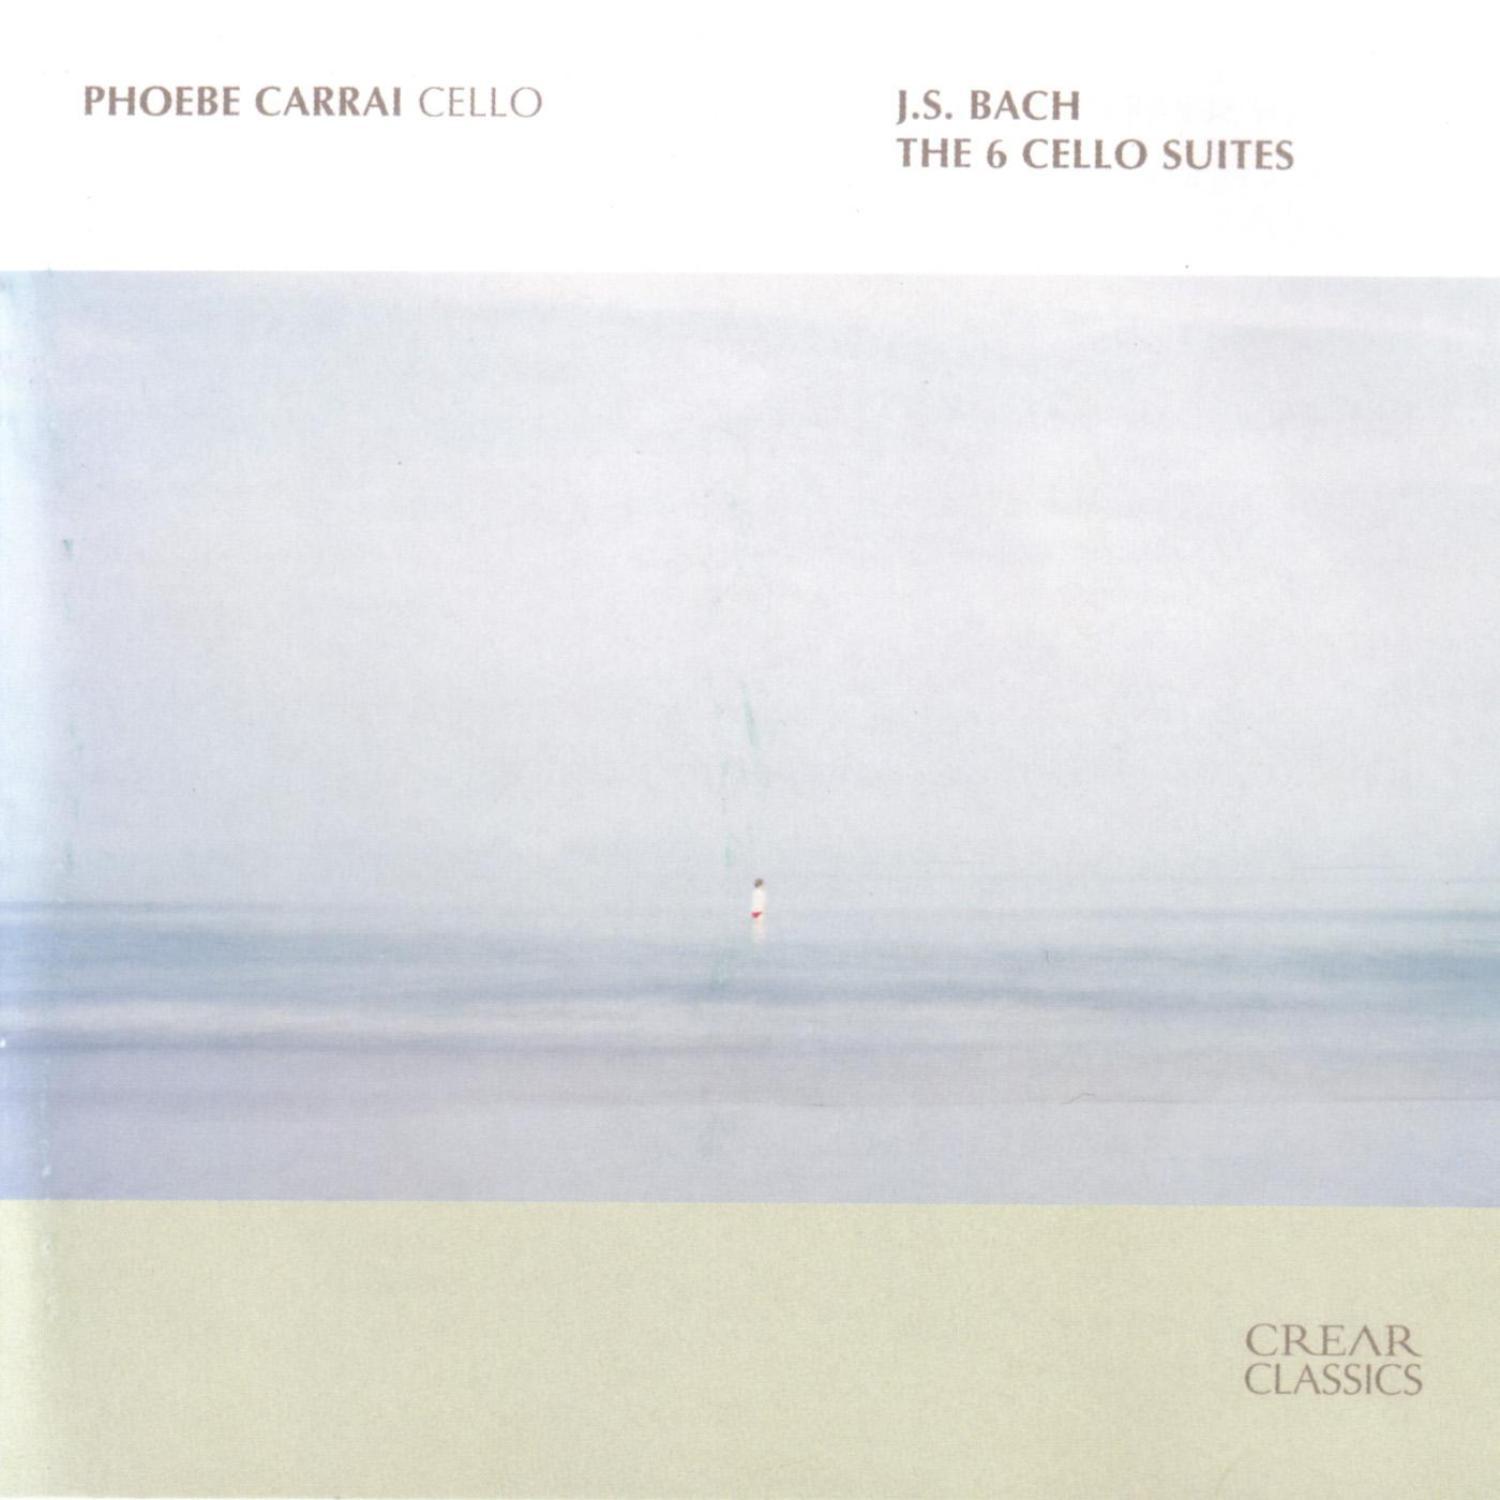 J.S. Bach: The 6 Cello Suites专辑